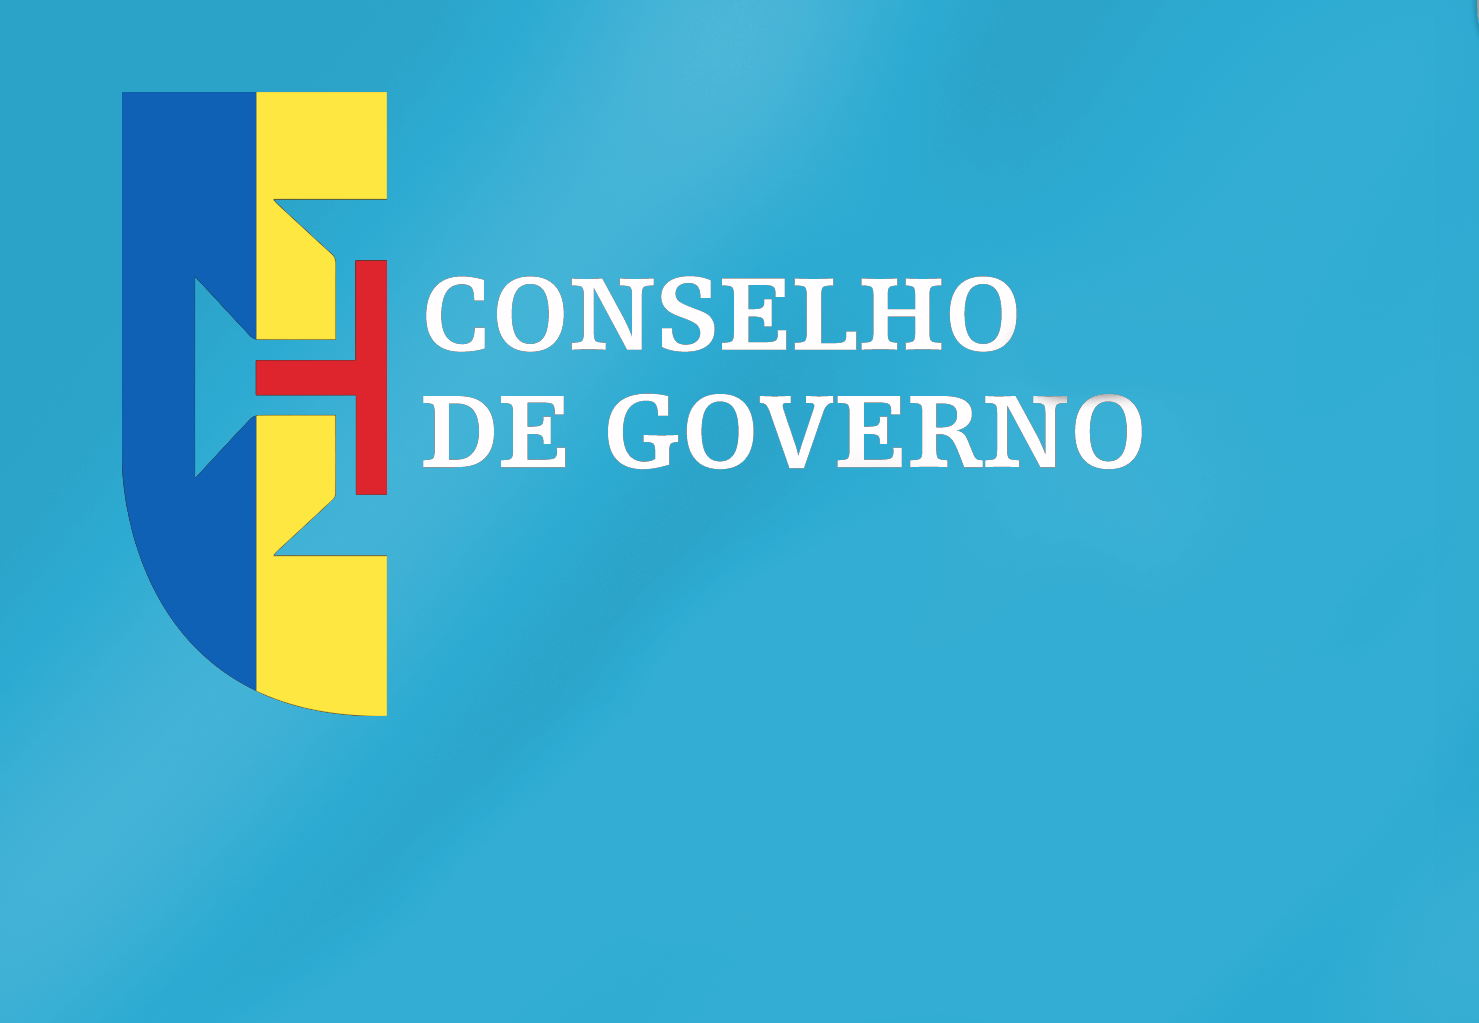 Conclusões Conselho de Governo - 19 de janeiro de 2023